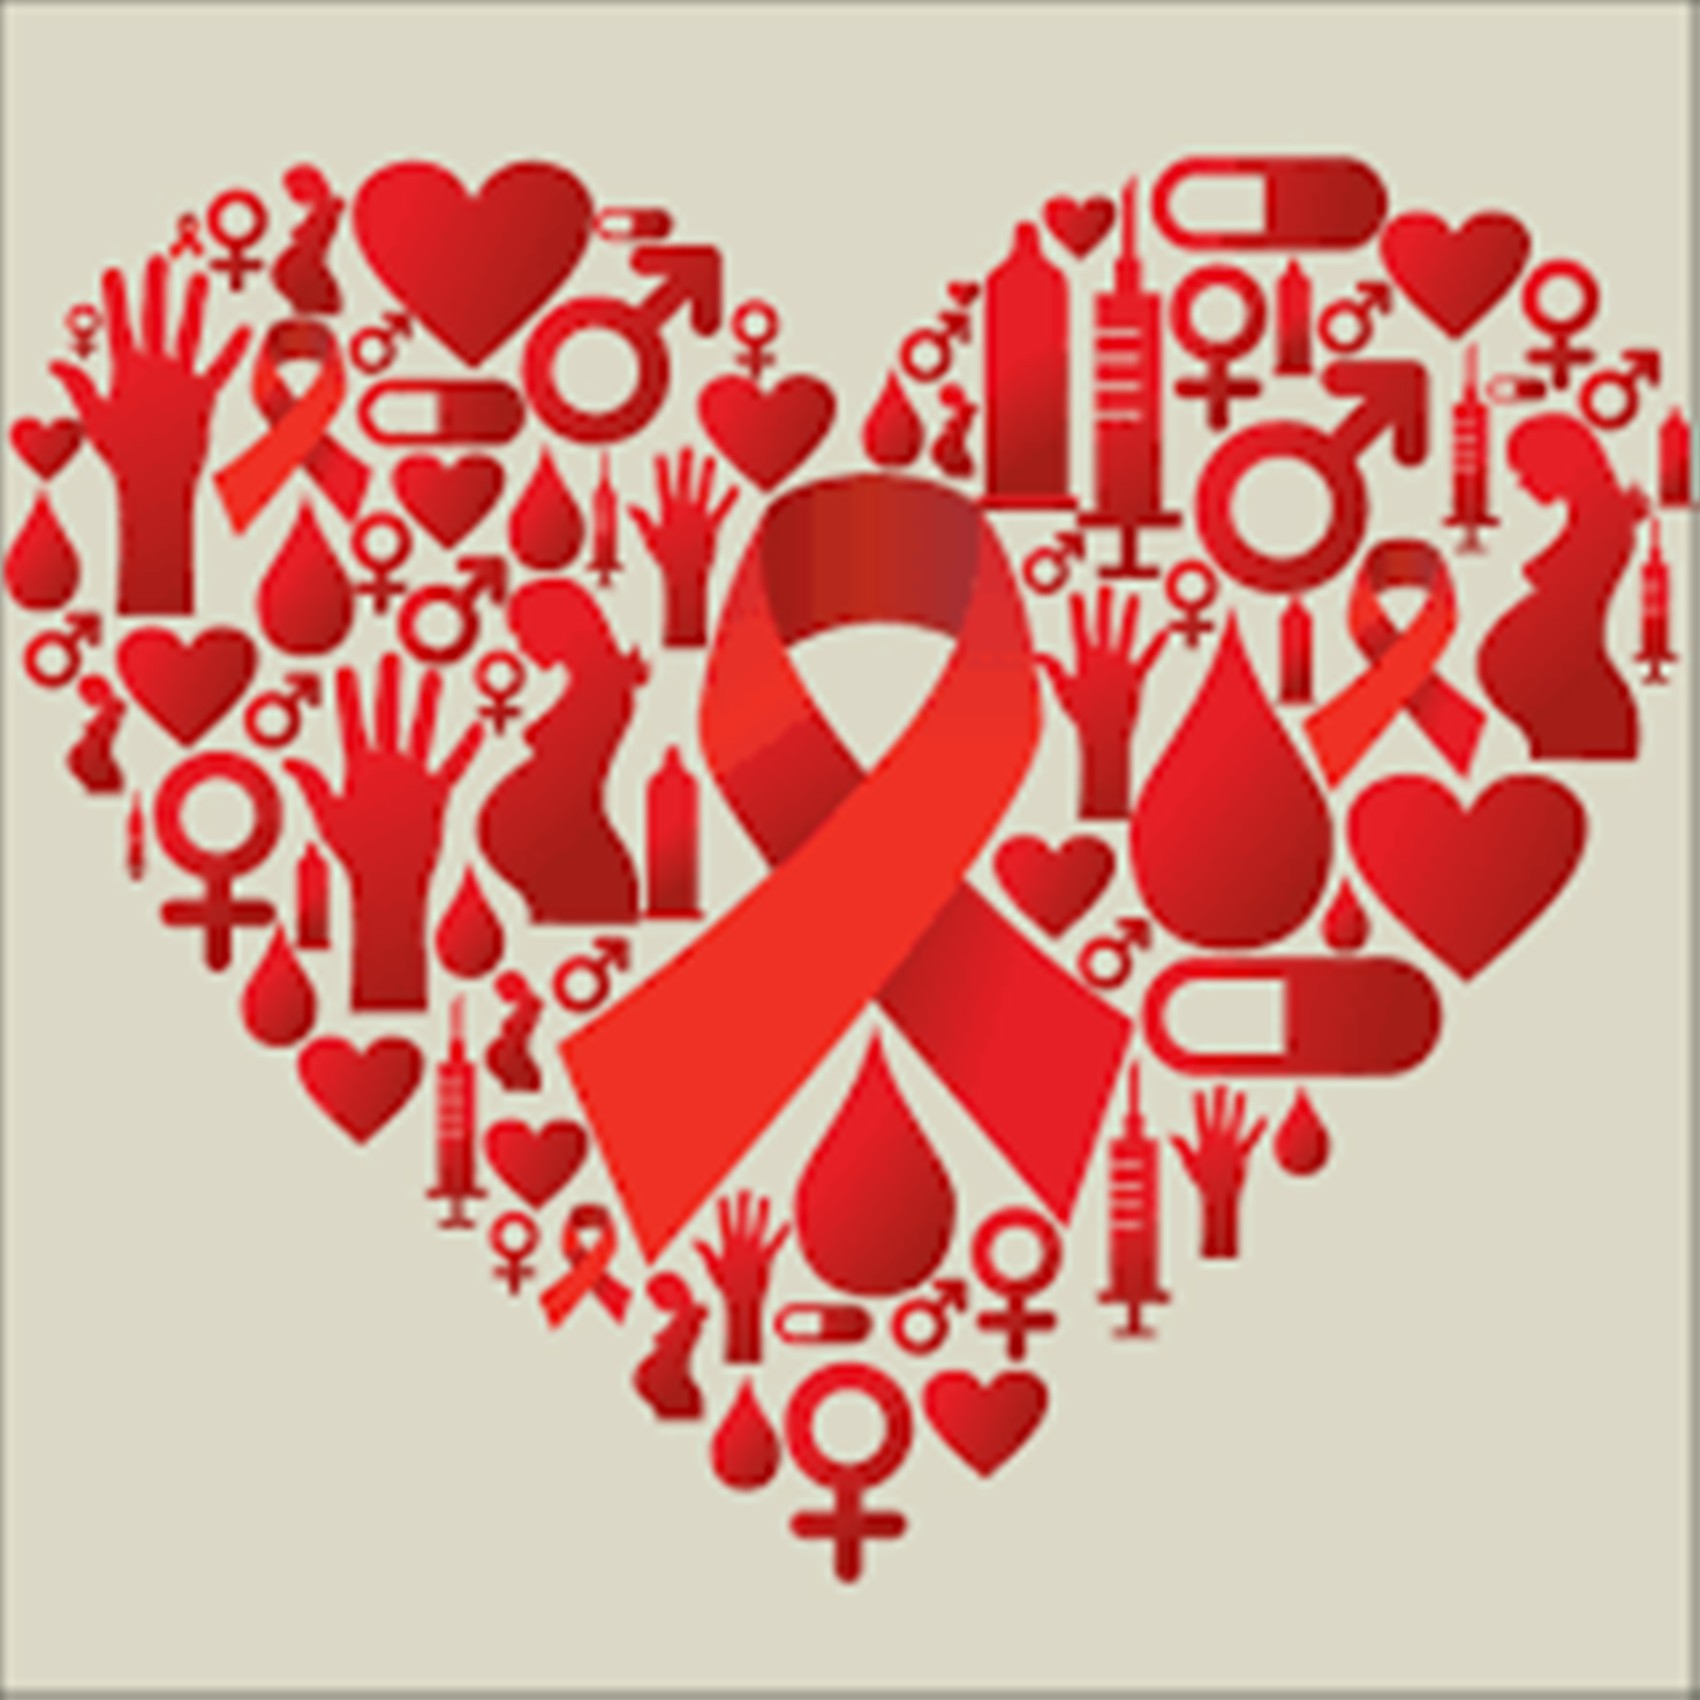 Cara Cegah dan Tangani HIV AIDS